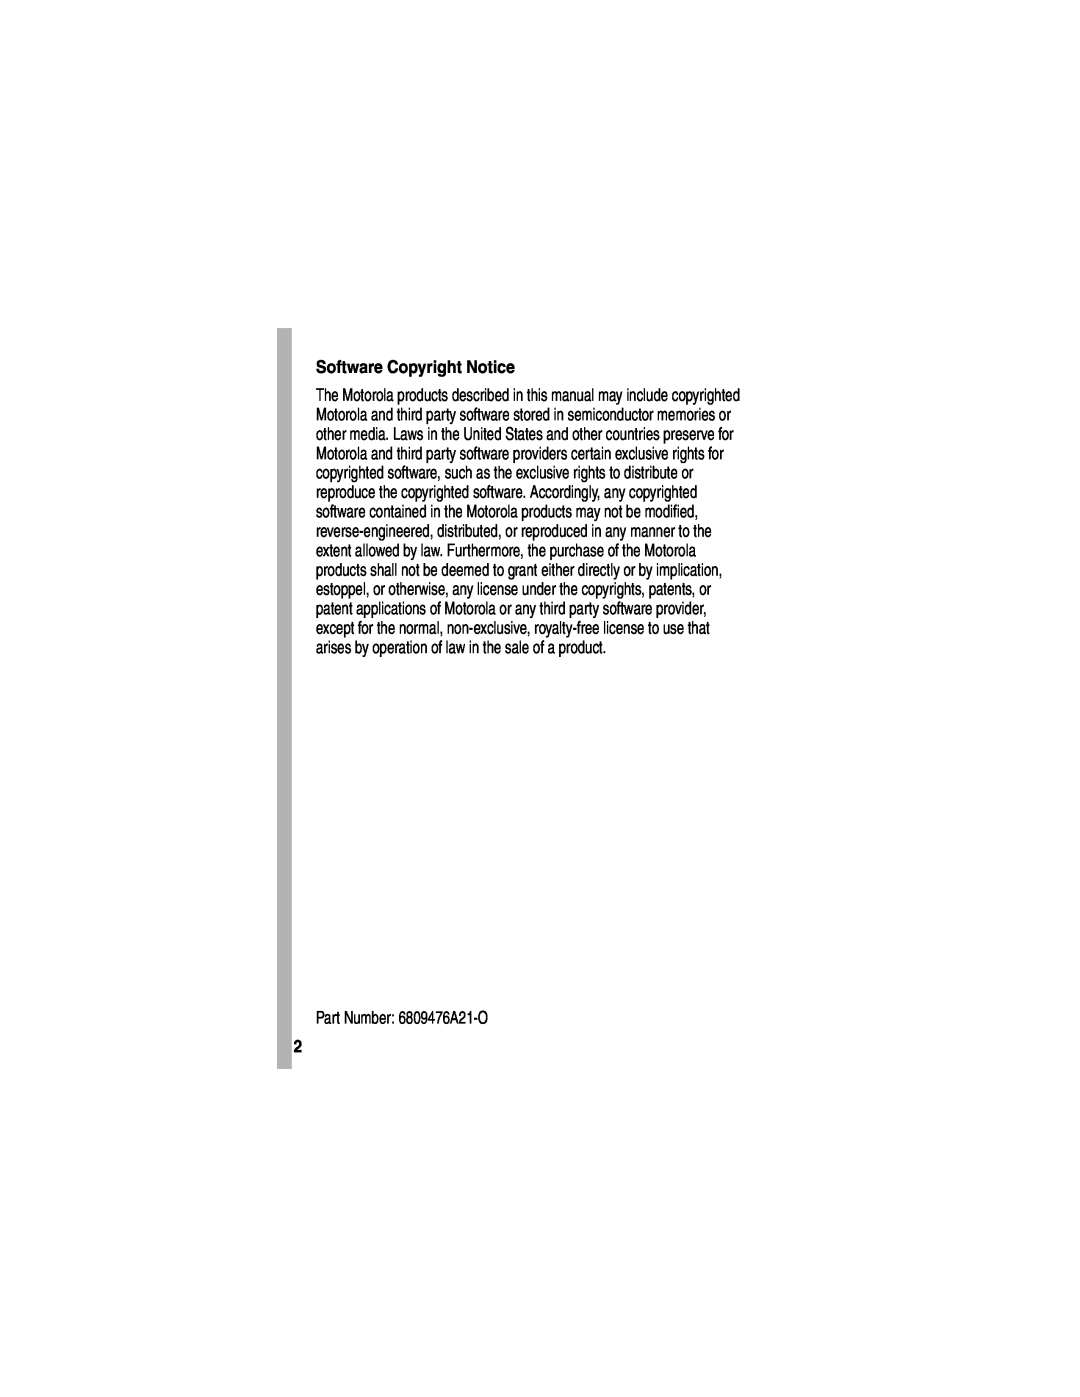 Motorola V551SLVATT manual Software Copyright Notice, Part Number 6809476A21-O 